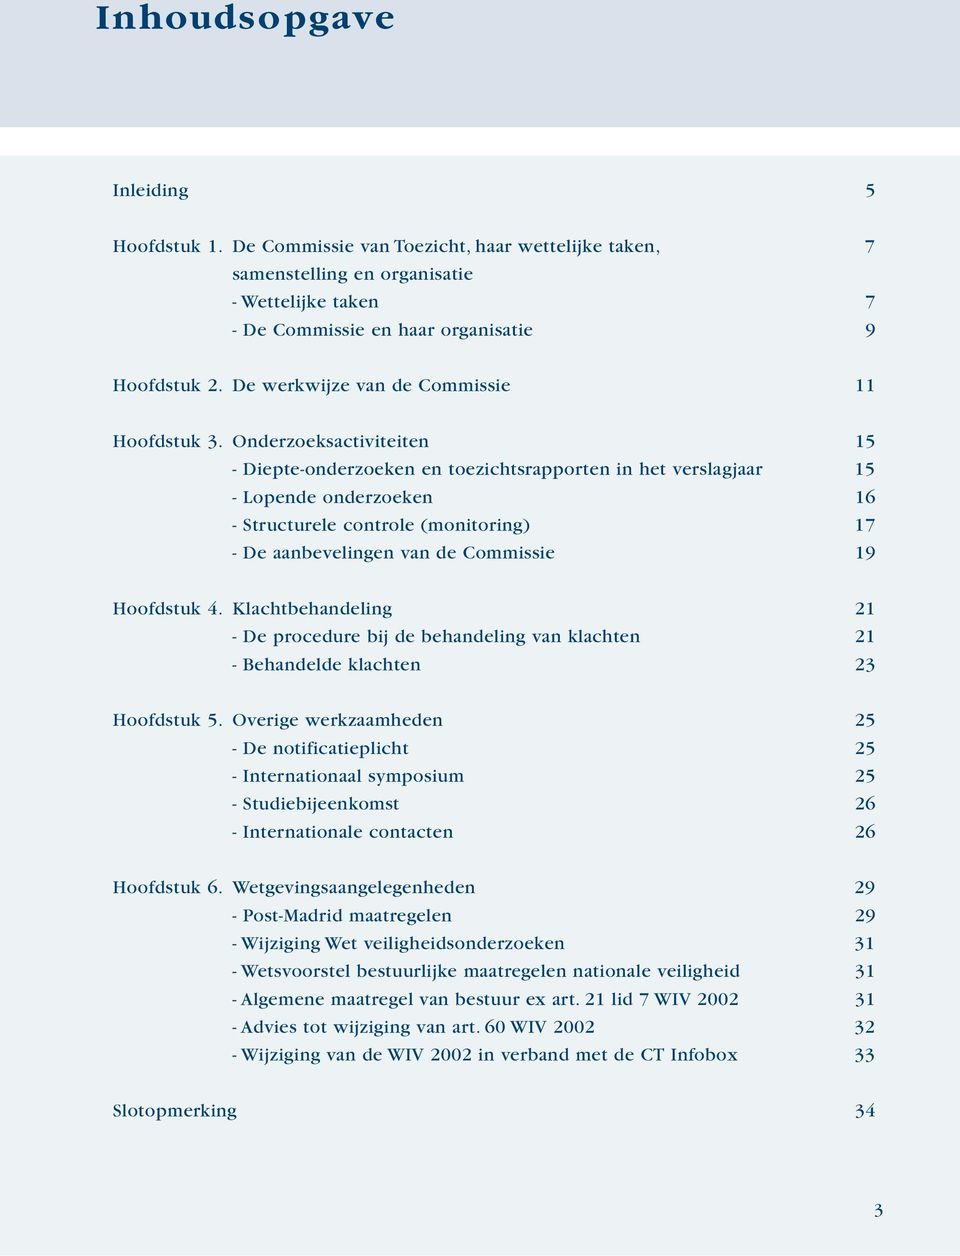 Onderzoeksactiviteiten 15 - Diepte-onderzoeken en toezichtsrapporten in het verslagjaar 15 - Lopende onderzoeken 16 - Structurele controle (monitoring) 17 - De aanbevelingen van de Commissie 19